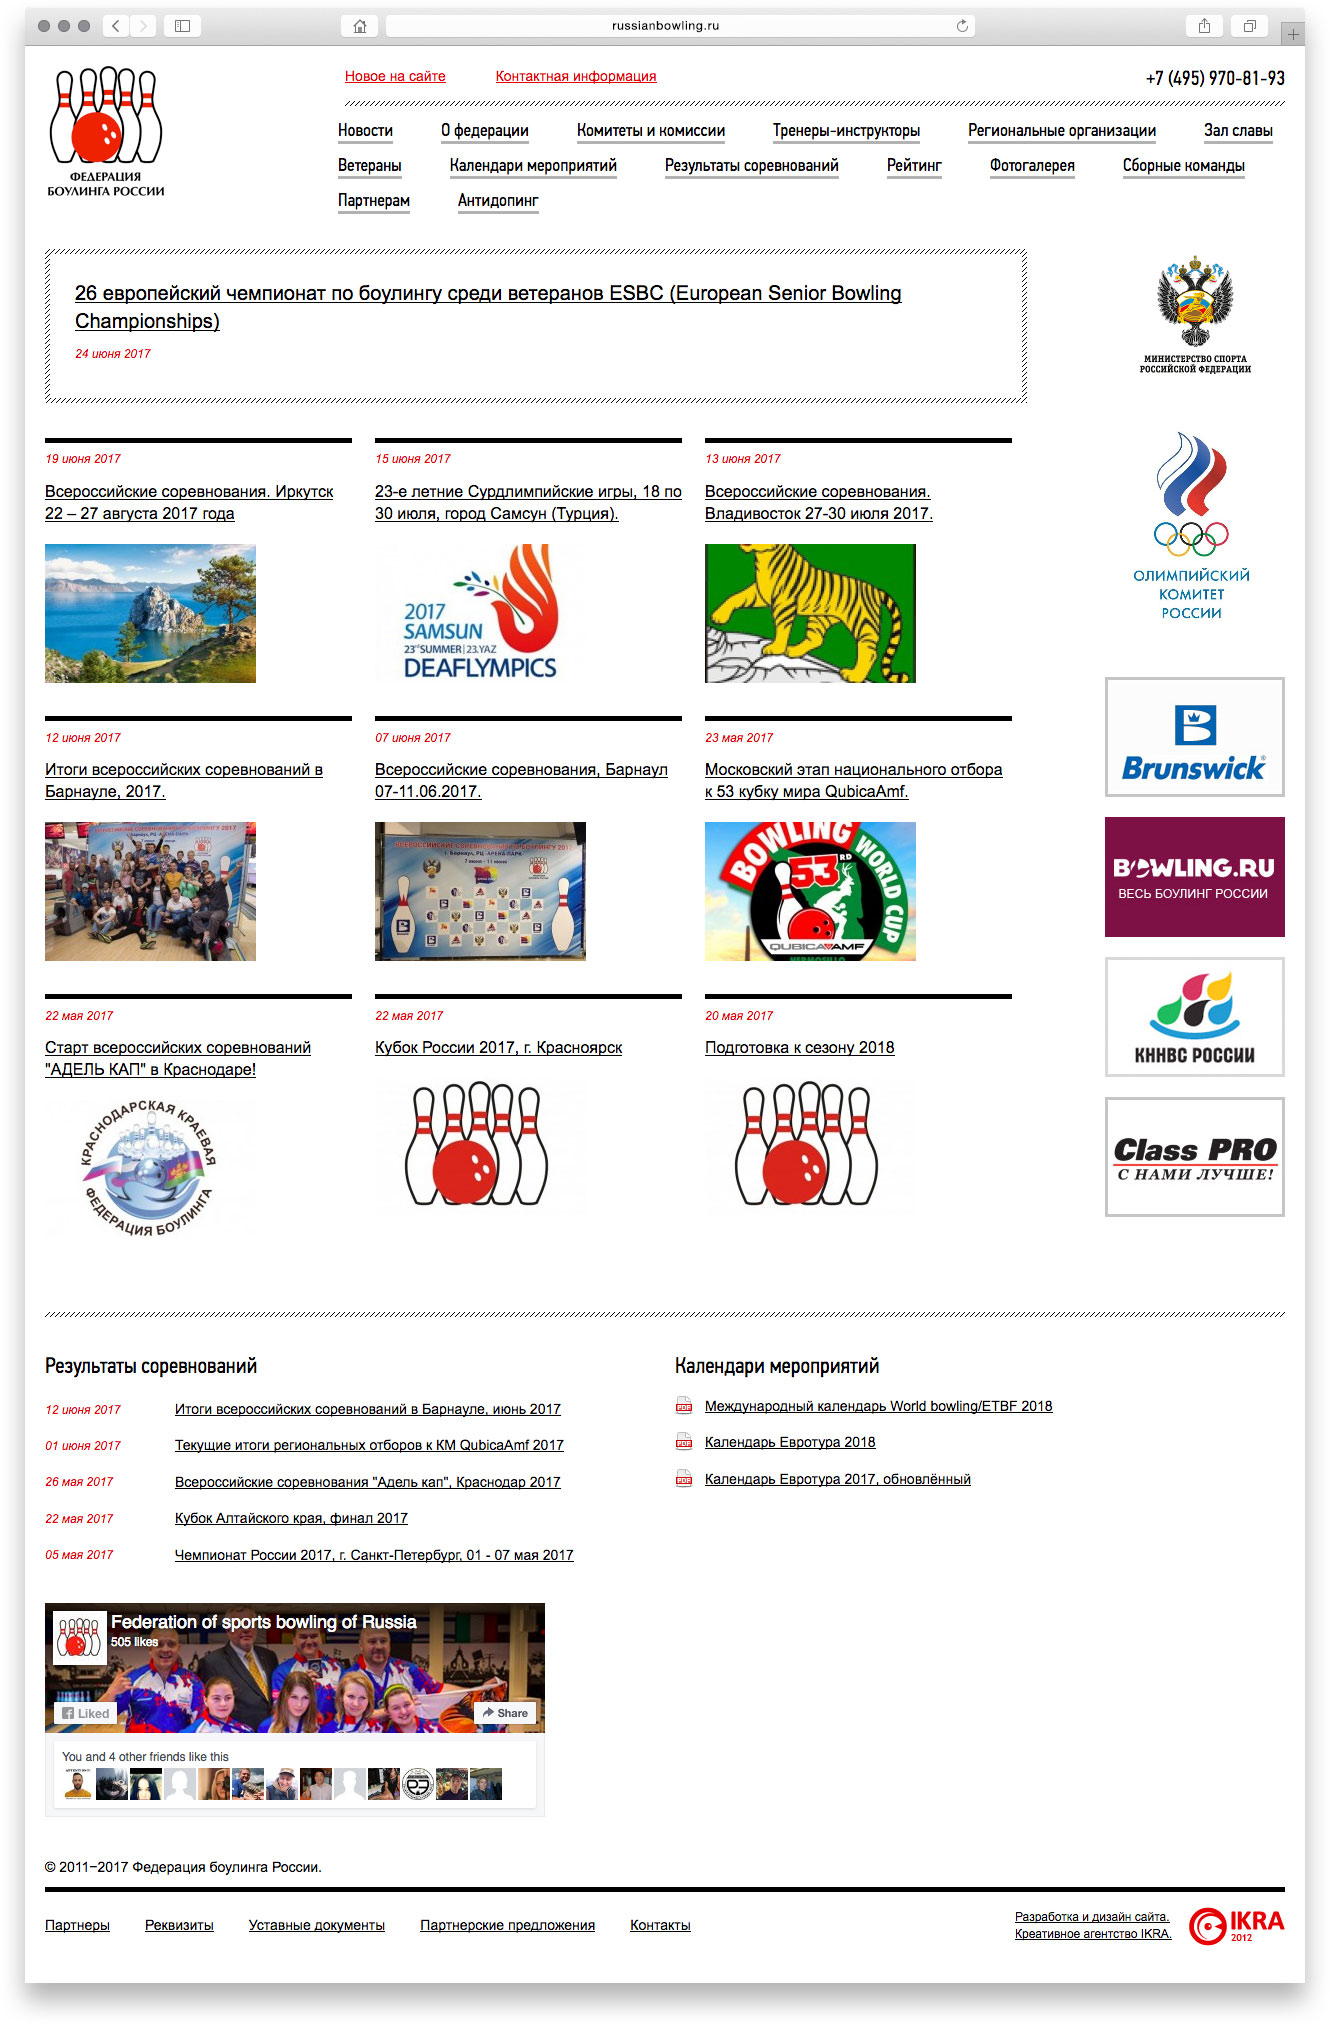 Создание дизайна официального сайта Федерации боулинга России